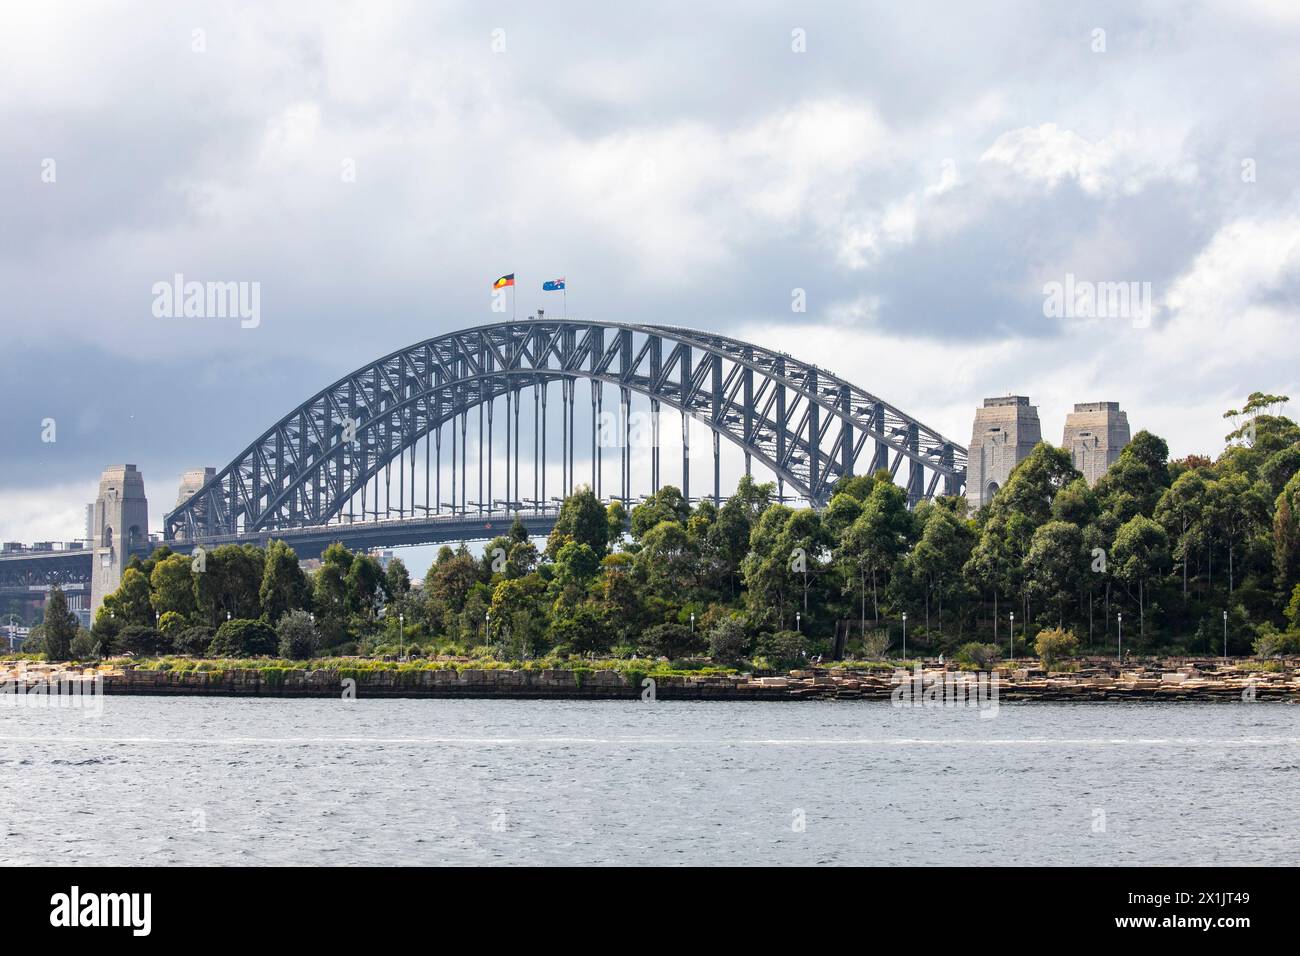 Die weltberühmte Sydney Harbour Bridge, die höchste Stahlbogenbrücke der Welt, wurde von der britischen Firma Dorman Long erbaut und 1932 in Sydney eröffnet Stockfoto